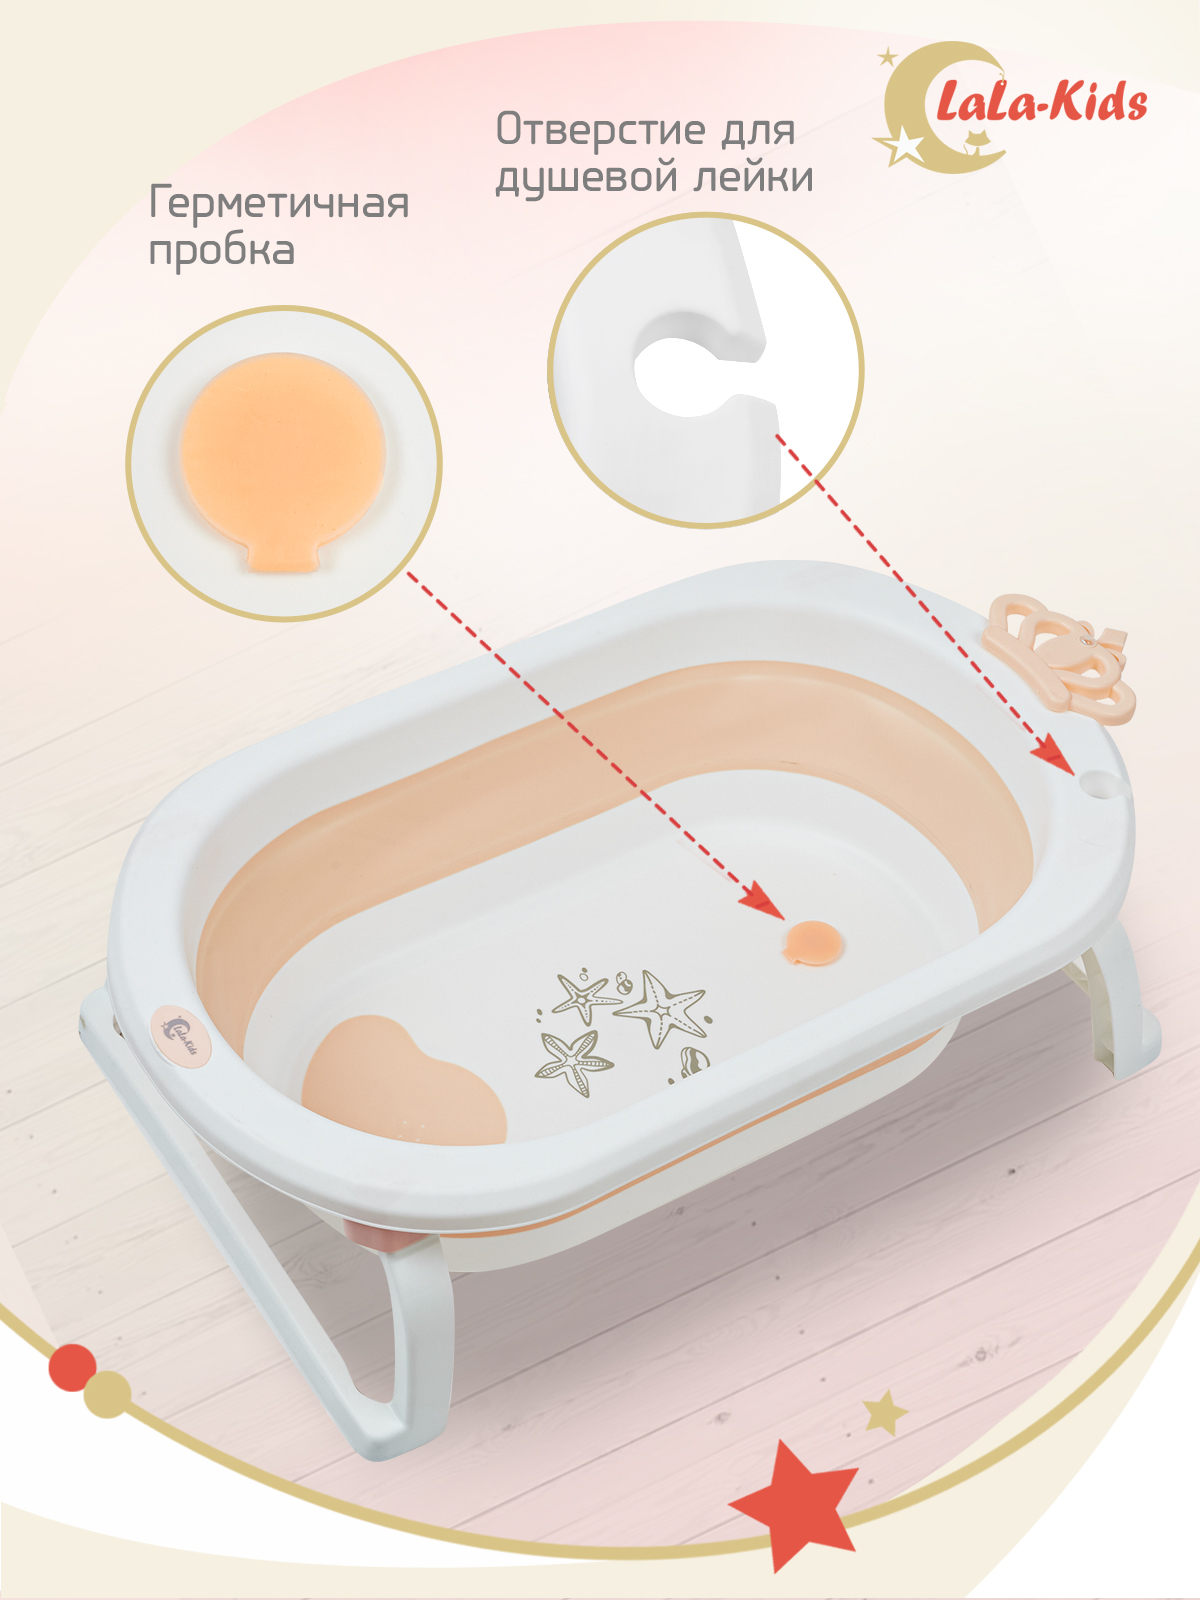 Детская ванночка LaLa-Kids складная с матрасиком для купания новорожденных - фото 7